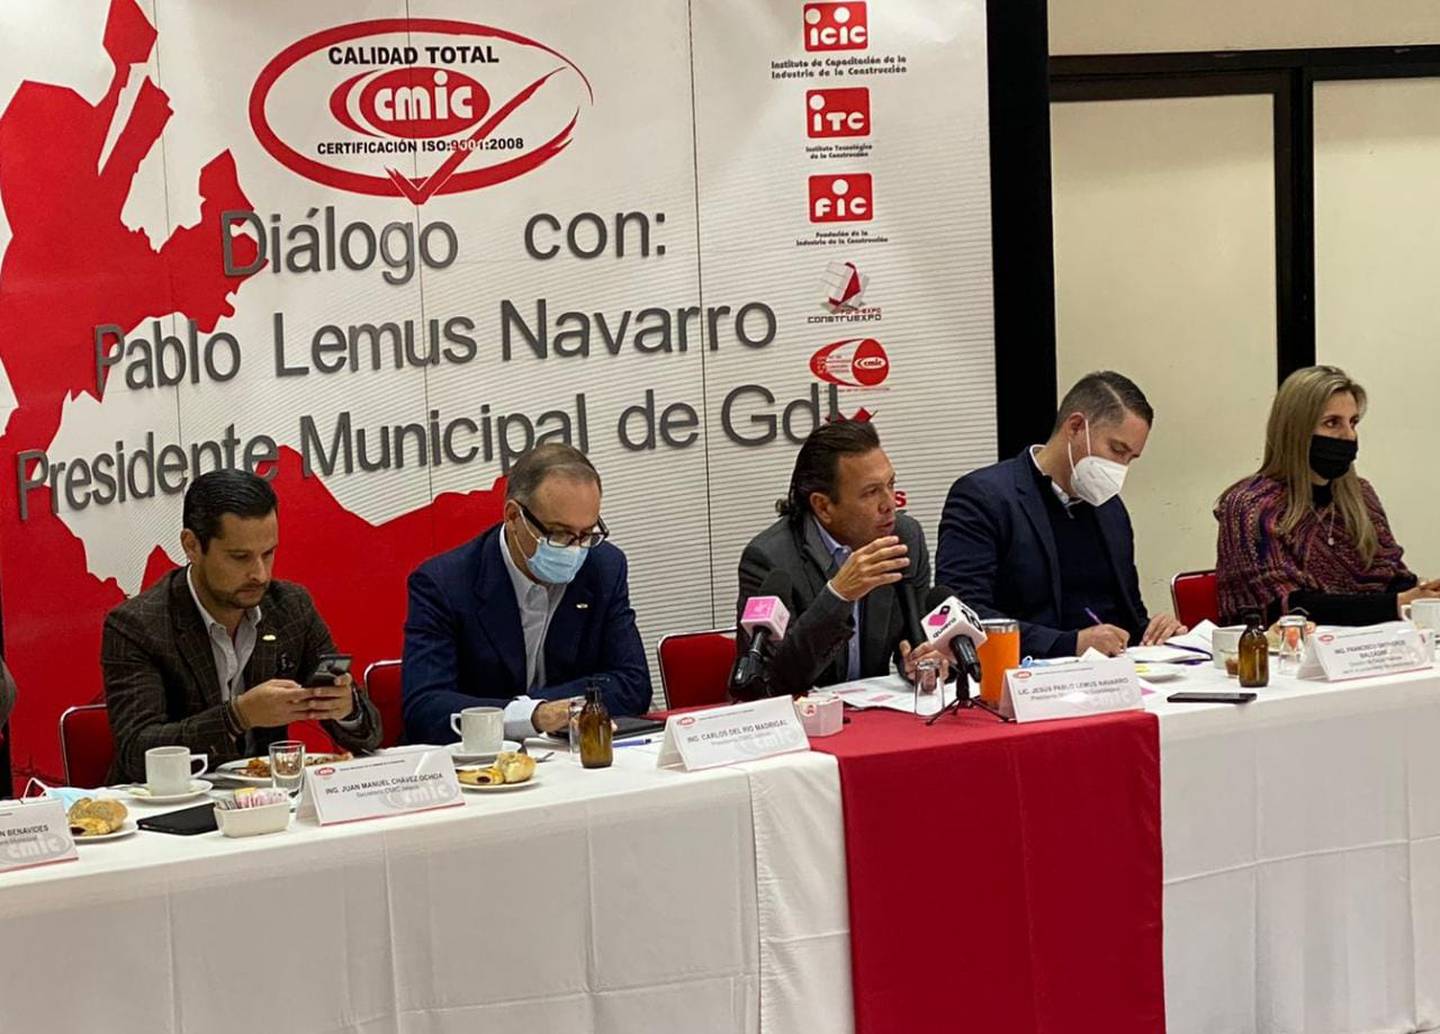 Reunión del presidente municipal de Guadalajara, Pablo Lemus, con los empresarios, para exponer los proyectos de obra pública.